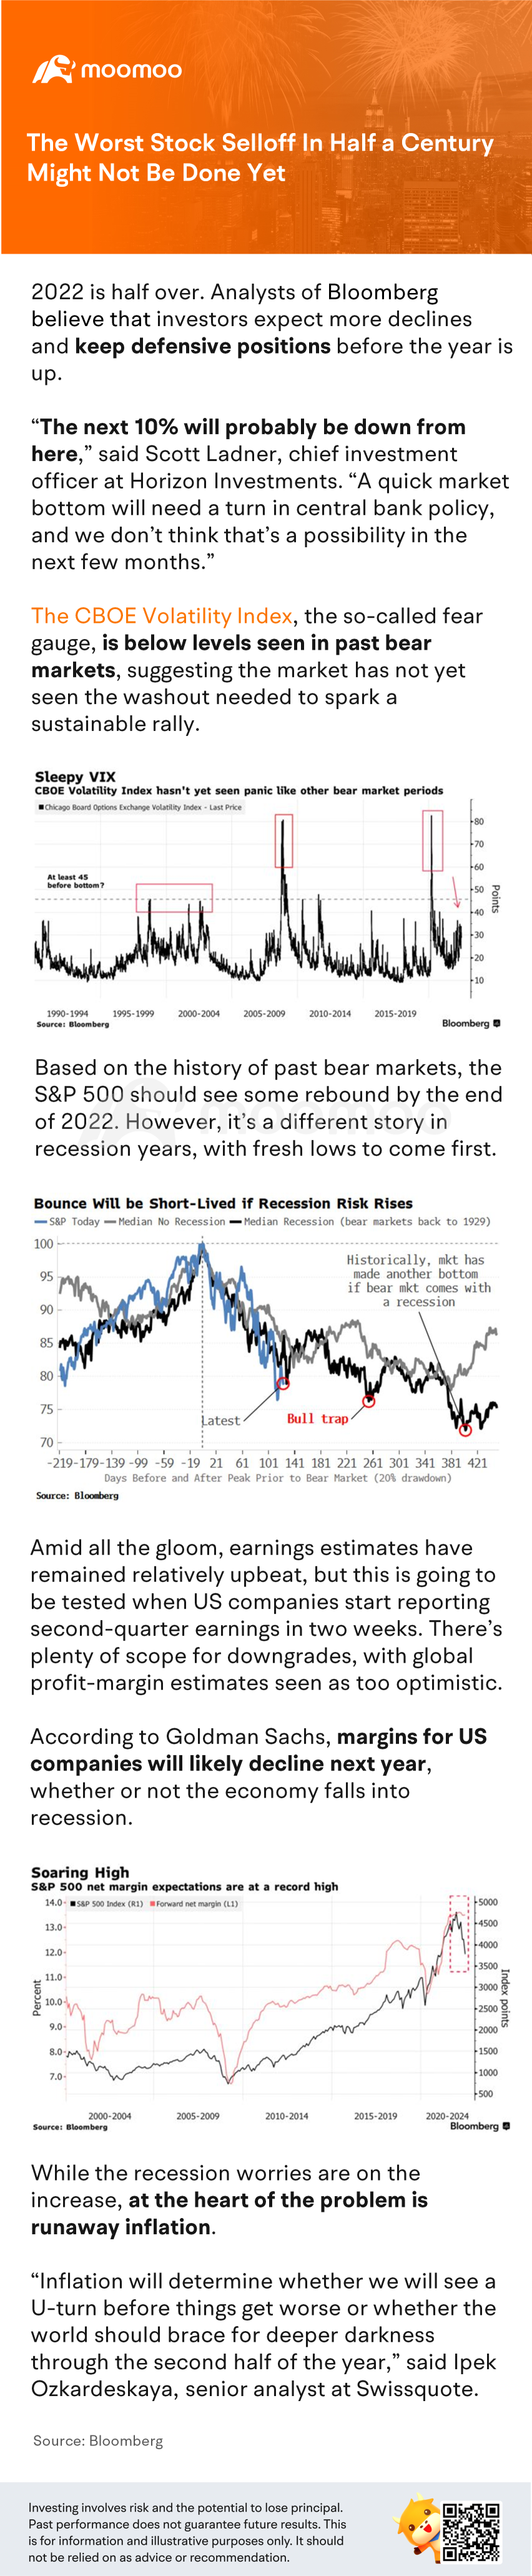 半个世纪以来最严重的股票抛售可能还没有结束